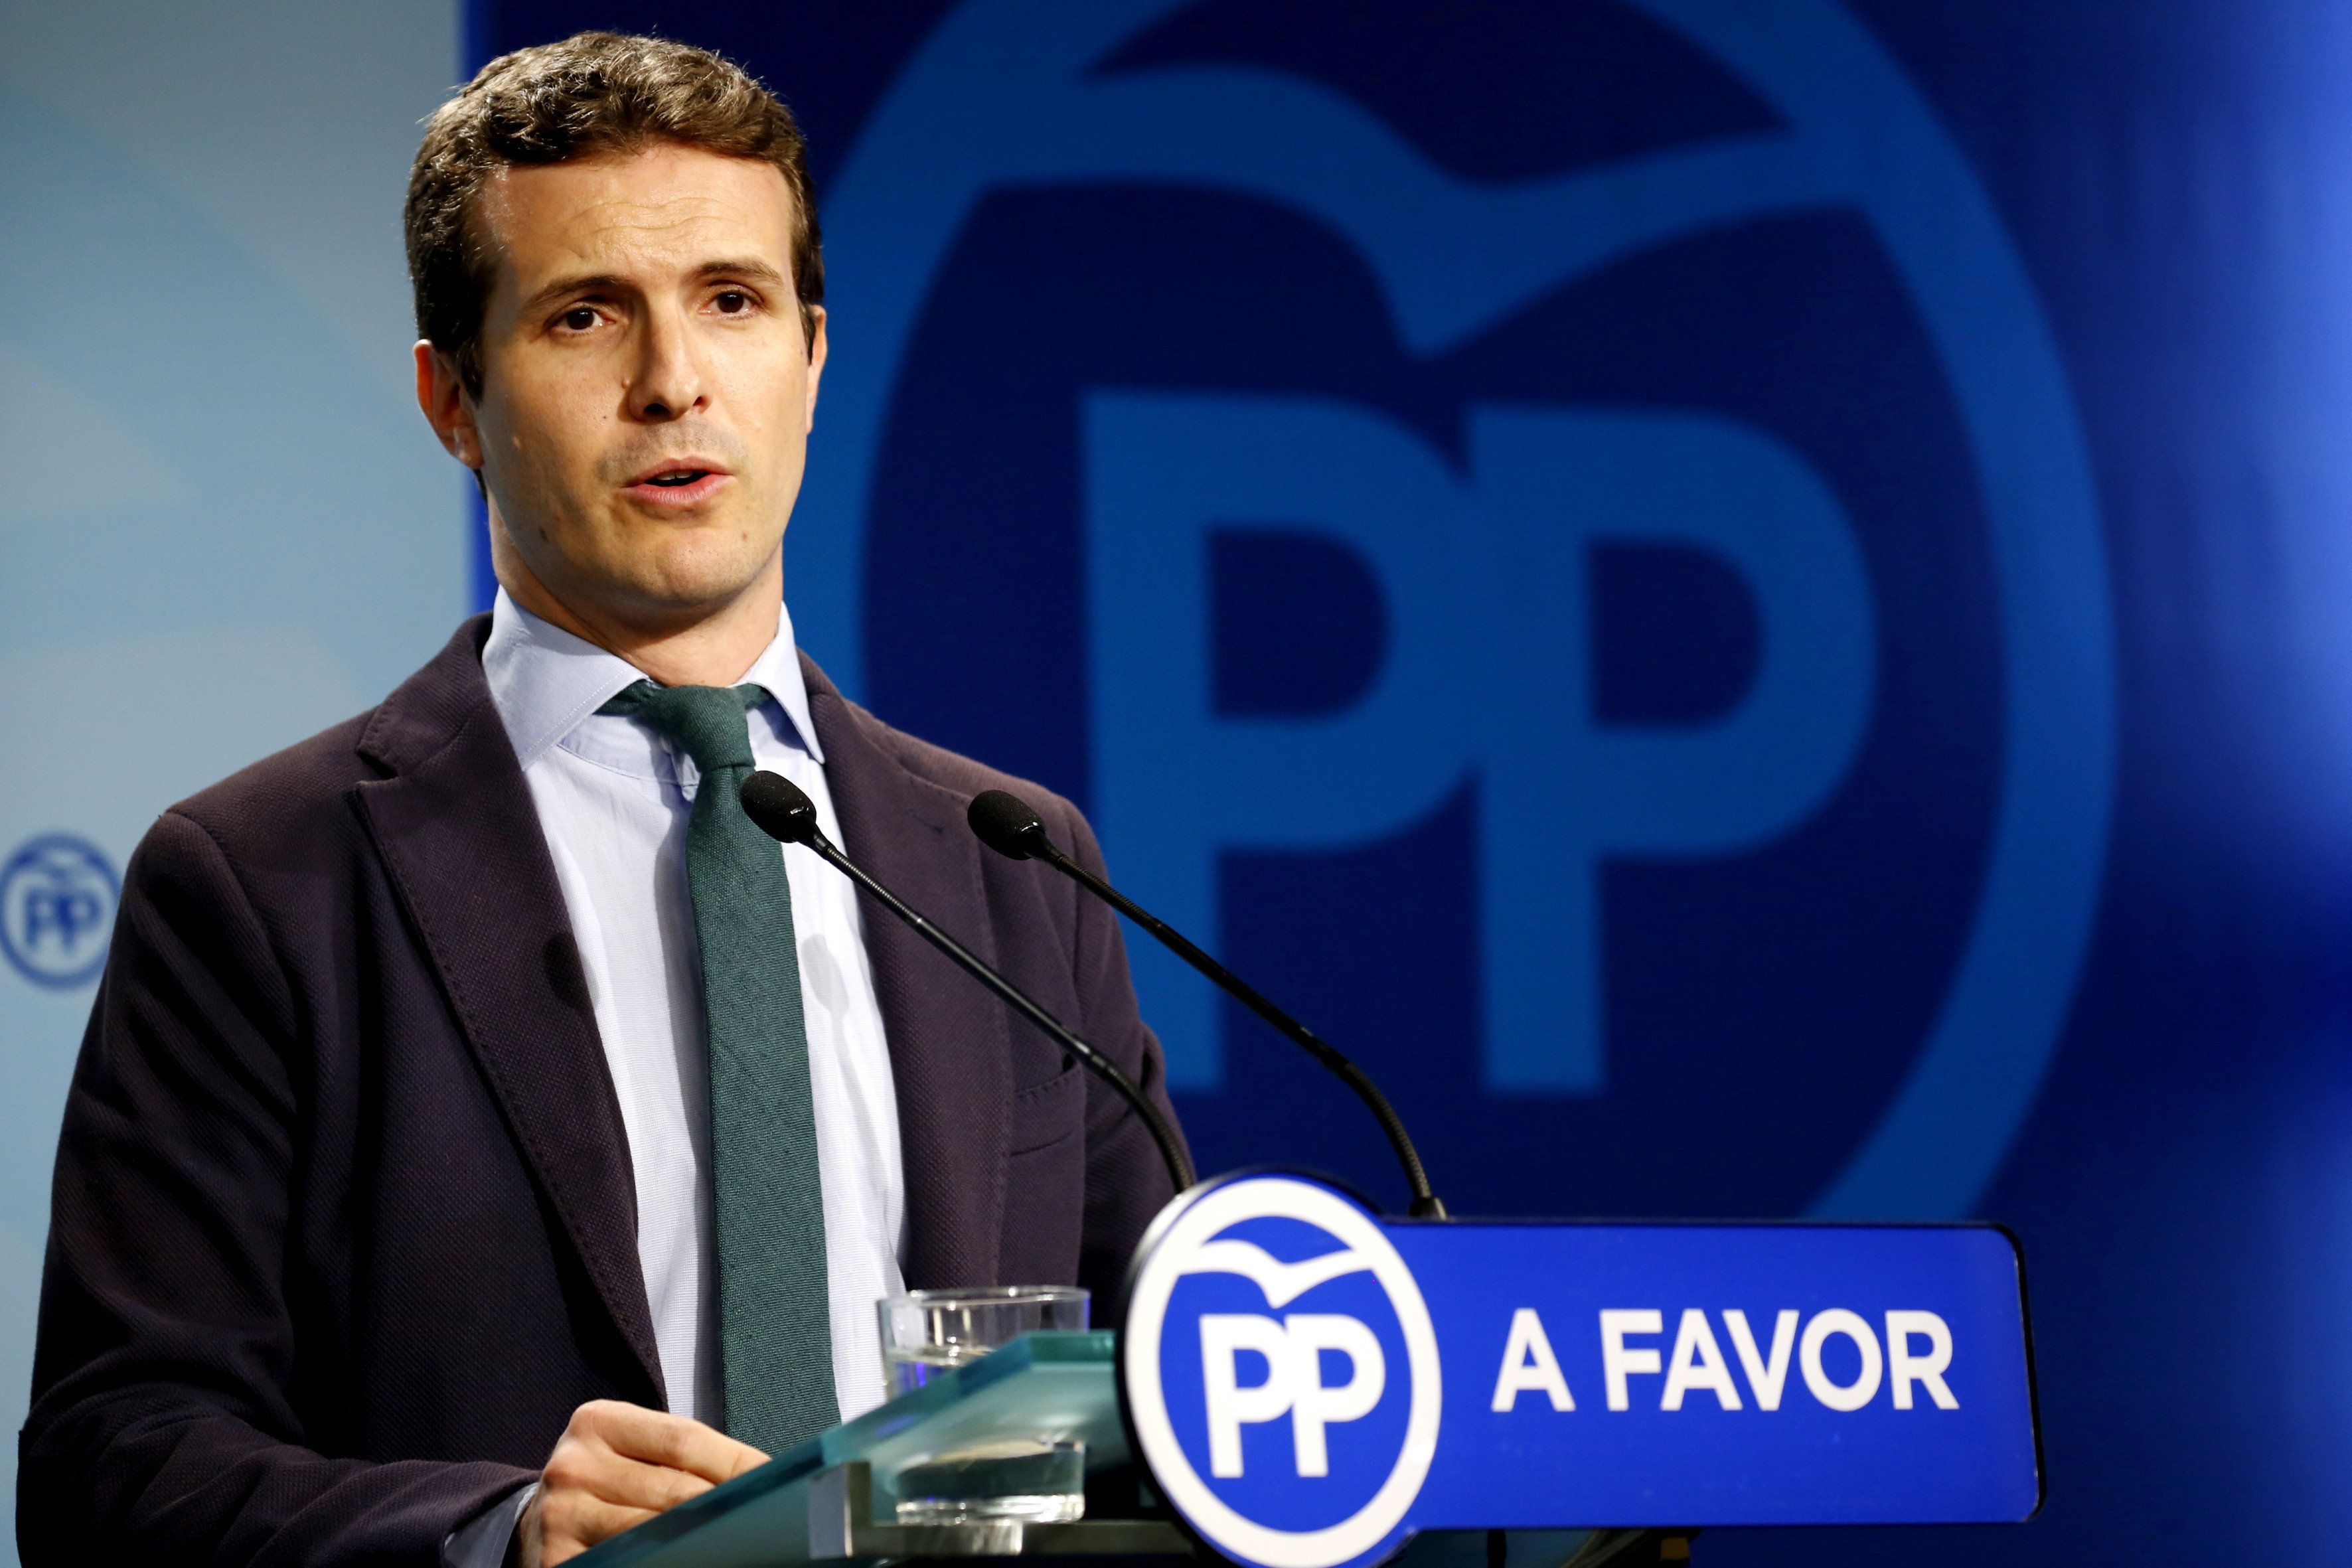 El PP dice "no, no y no" a la oferta de referéndum de Puigdemont